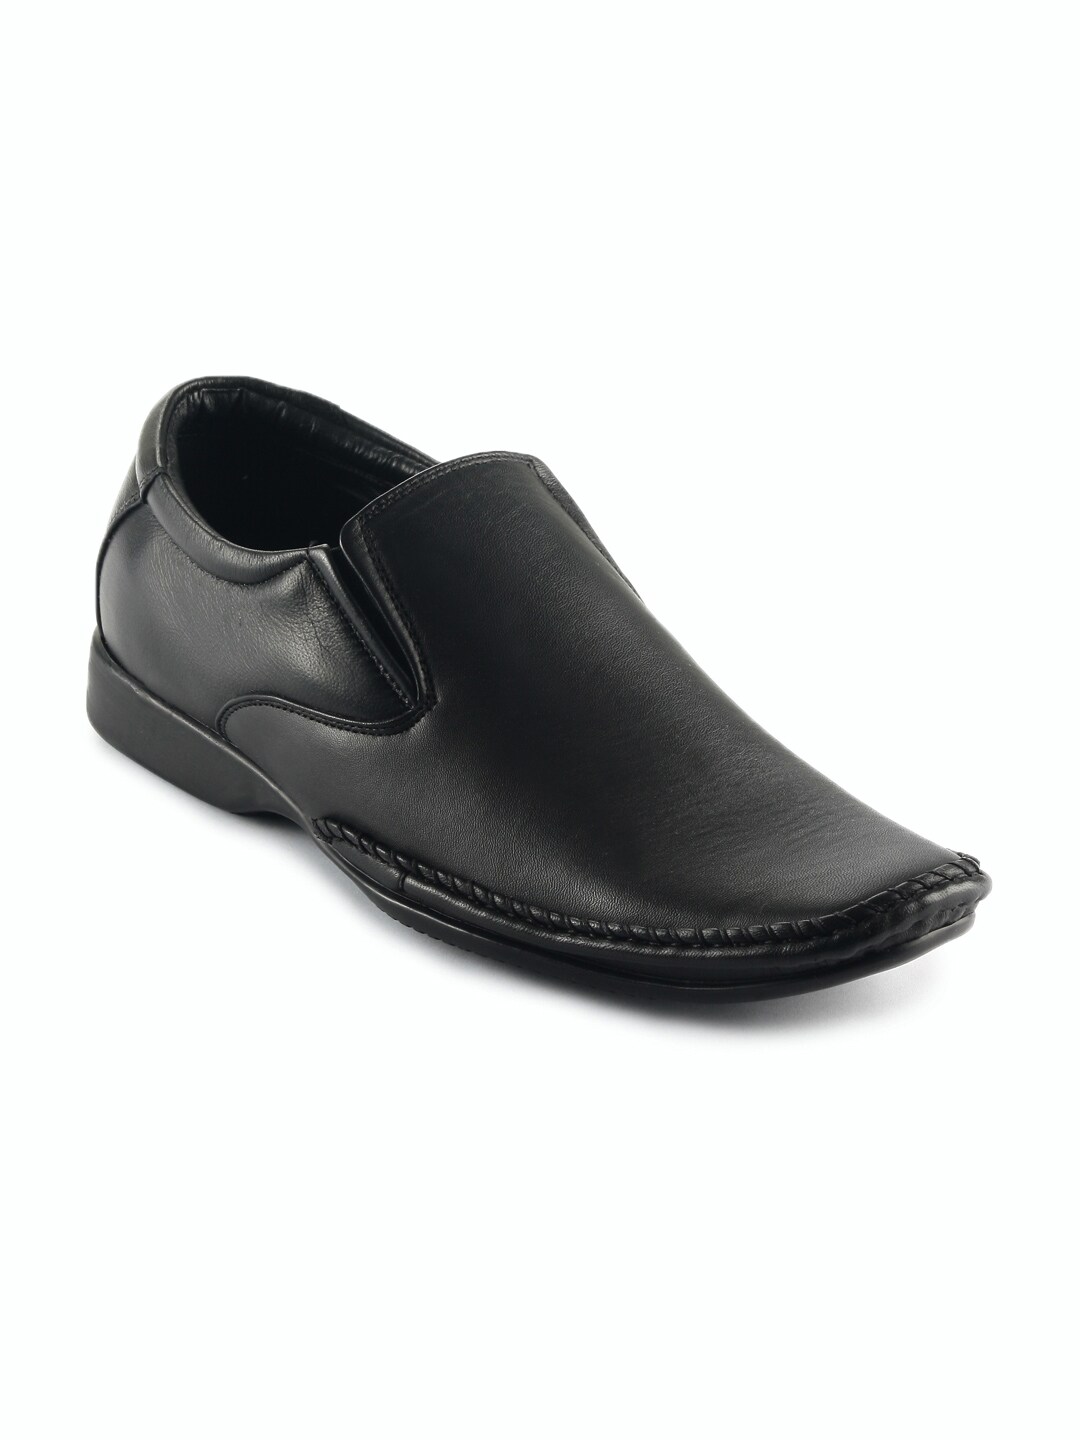 Franco Leone Men Formal Black Shoes